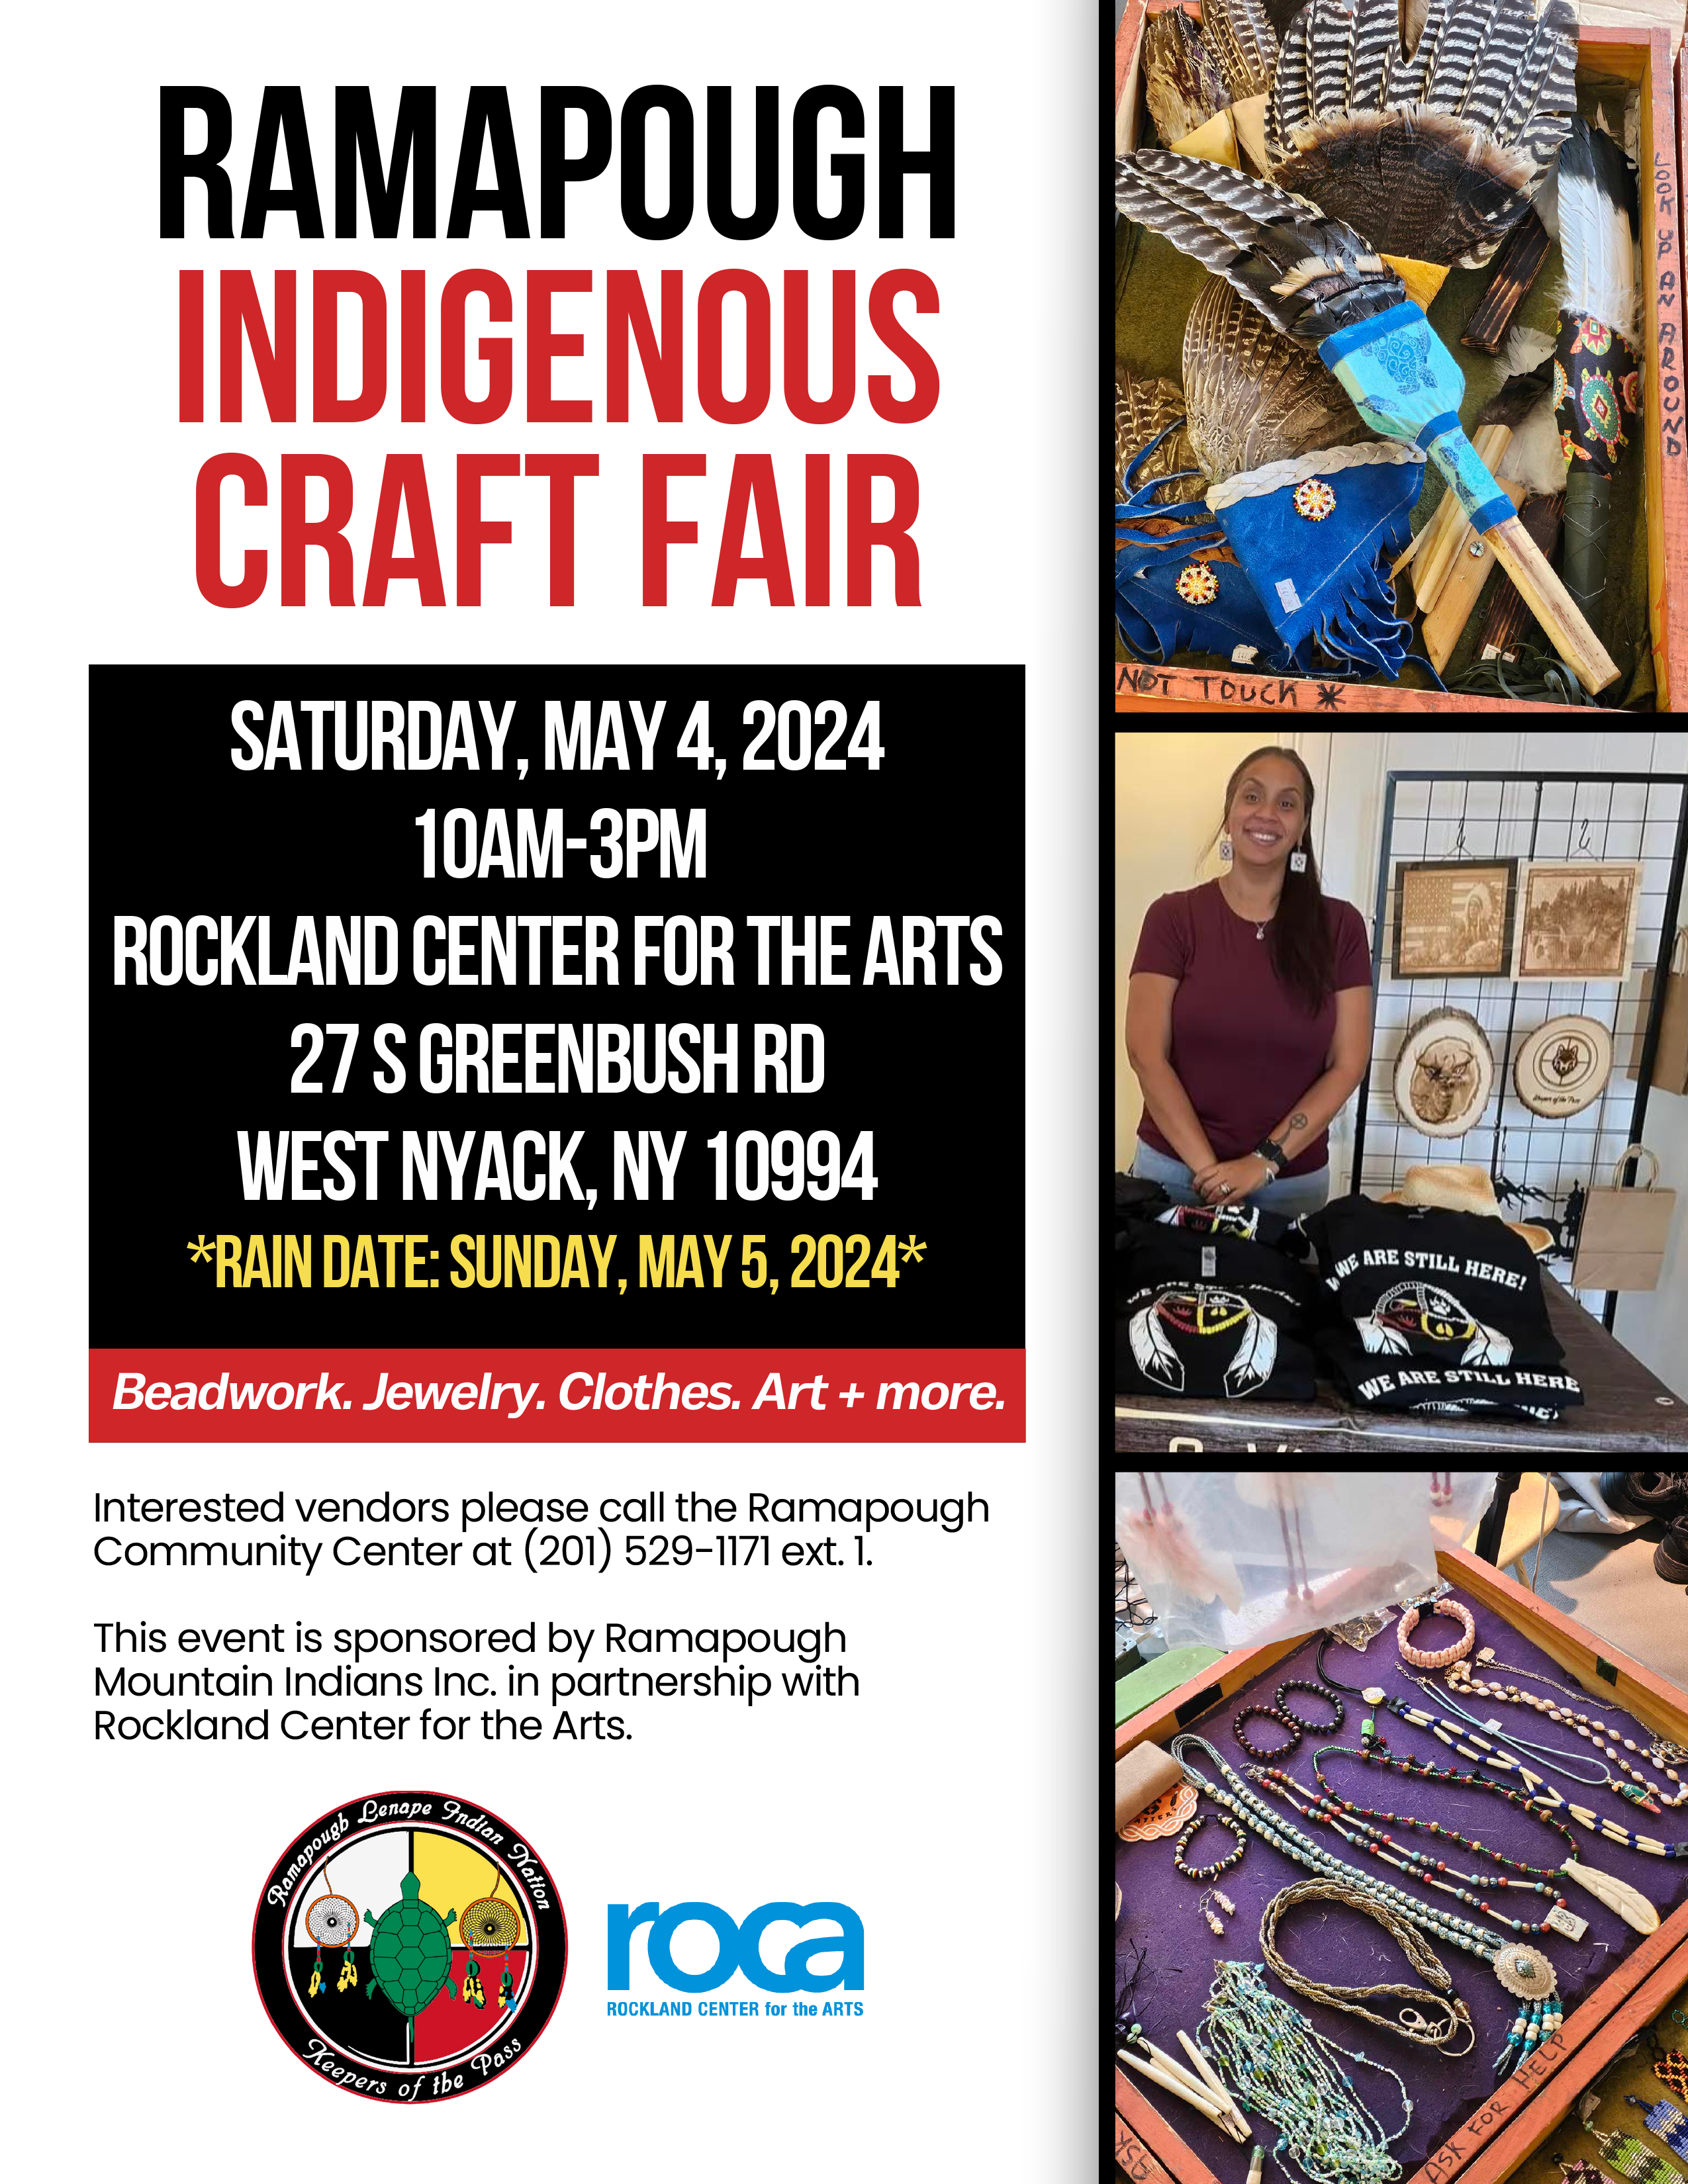 Ramapough Indigenous Craft Fair